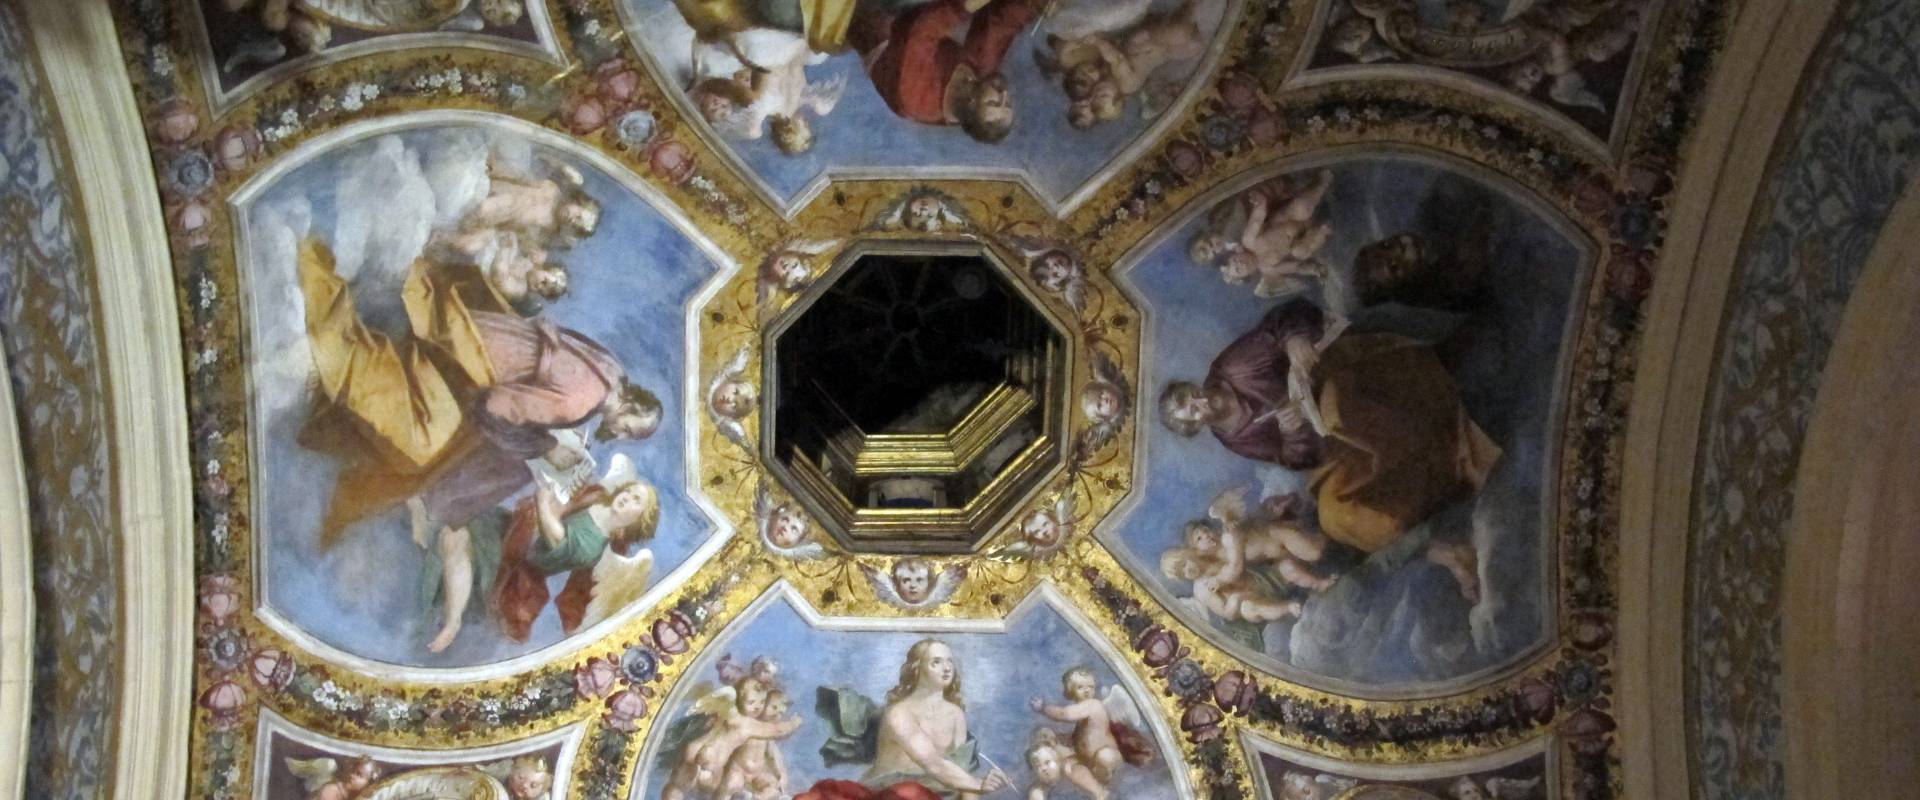 Castello estense di ferrara, int., cappella ducale 07 soffitto di giulio marescotti photo by Sailko